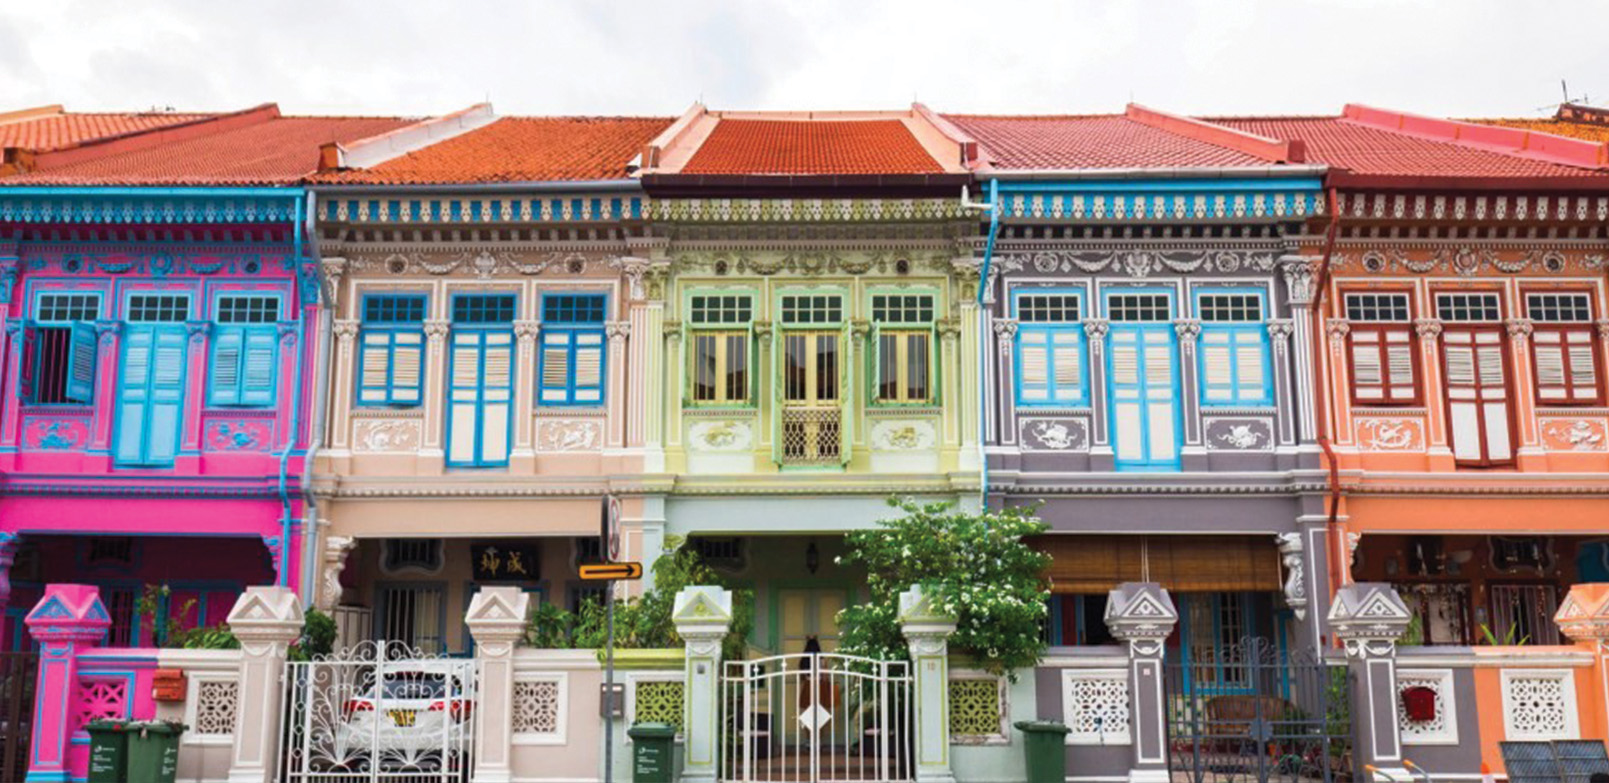 Mengenal lebih dekat daerah-daerah bertema warisan Singapura yang menawan.